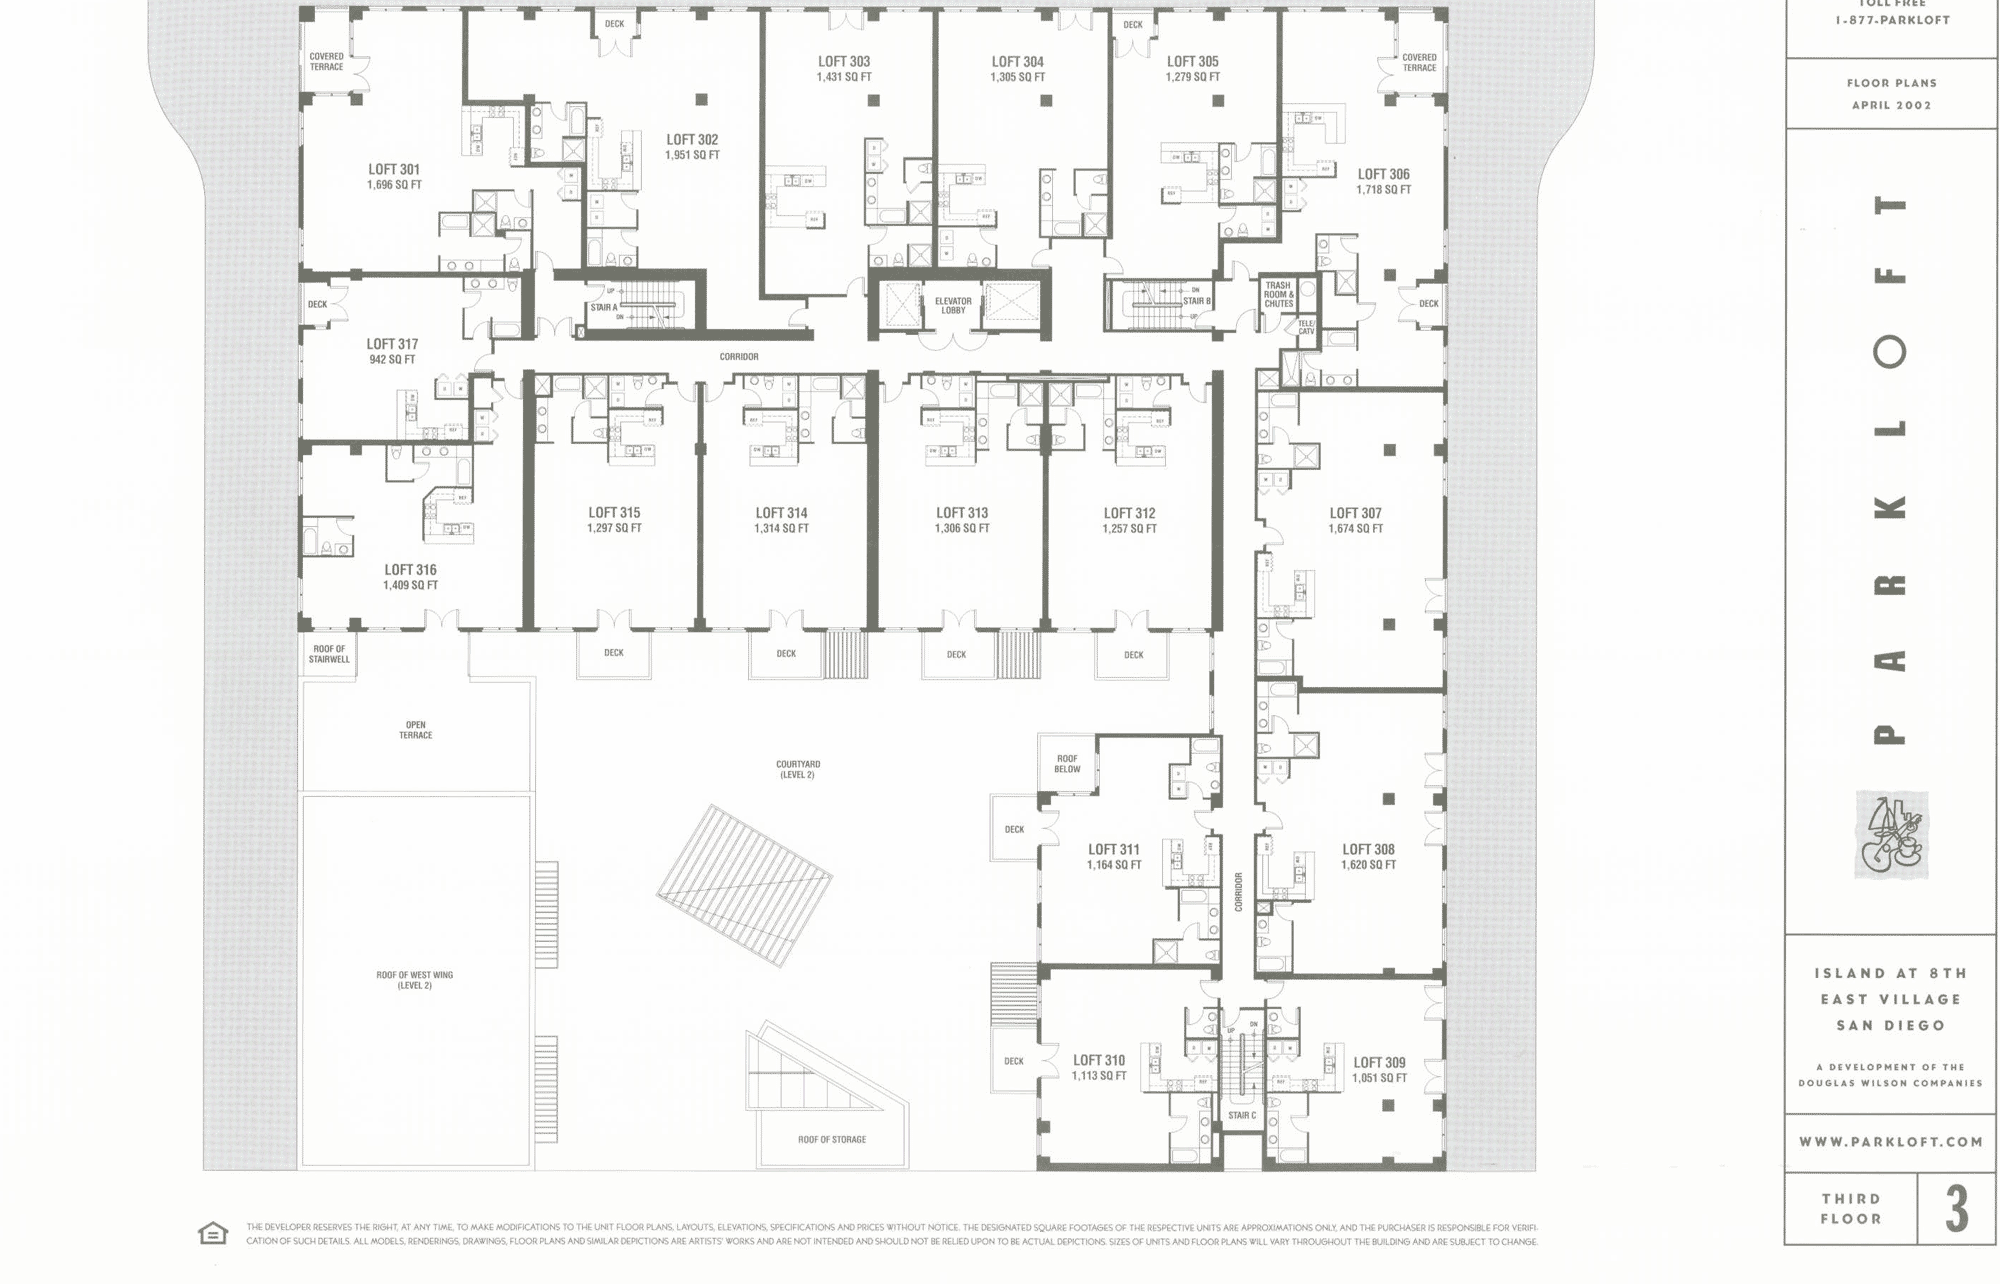 Parkloft Floor Plan 3rd Floor